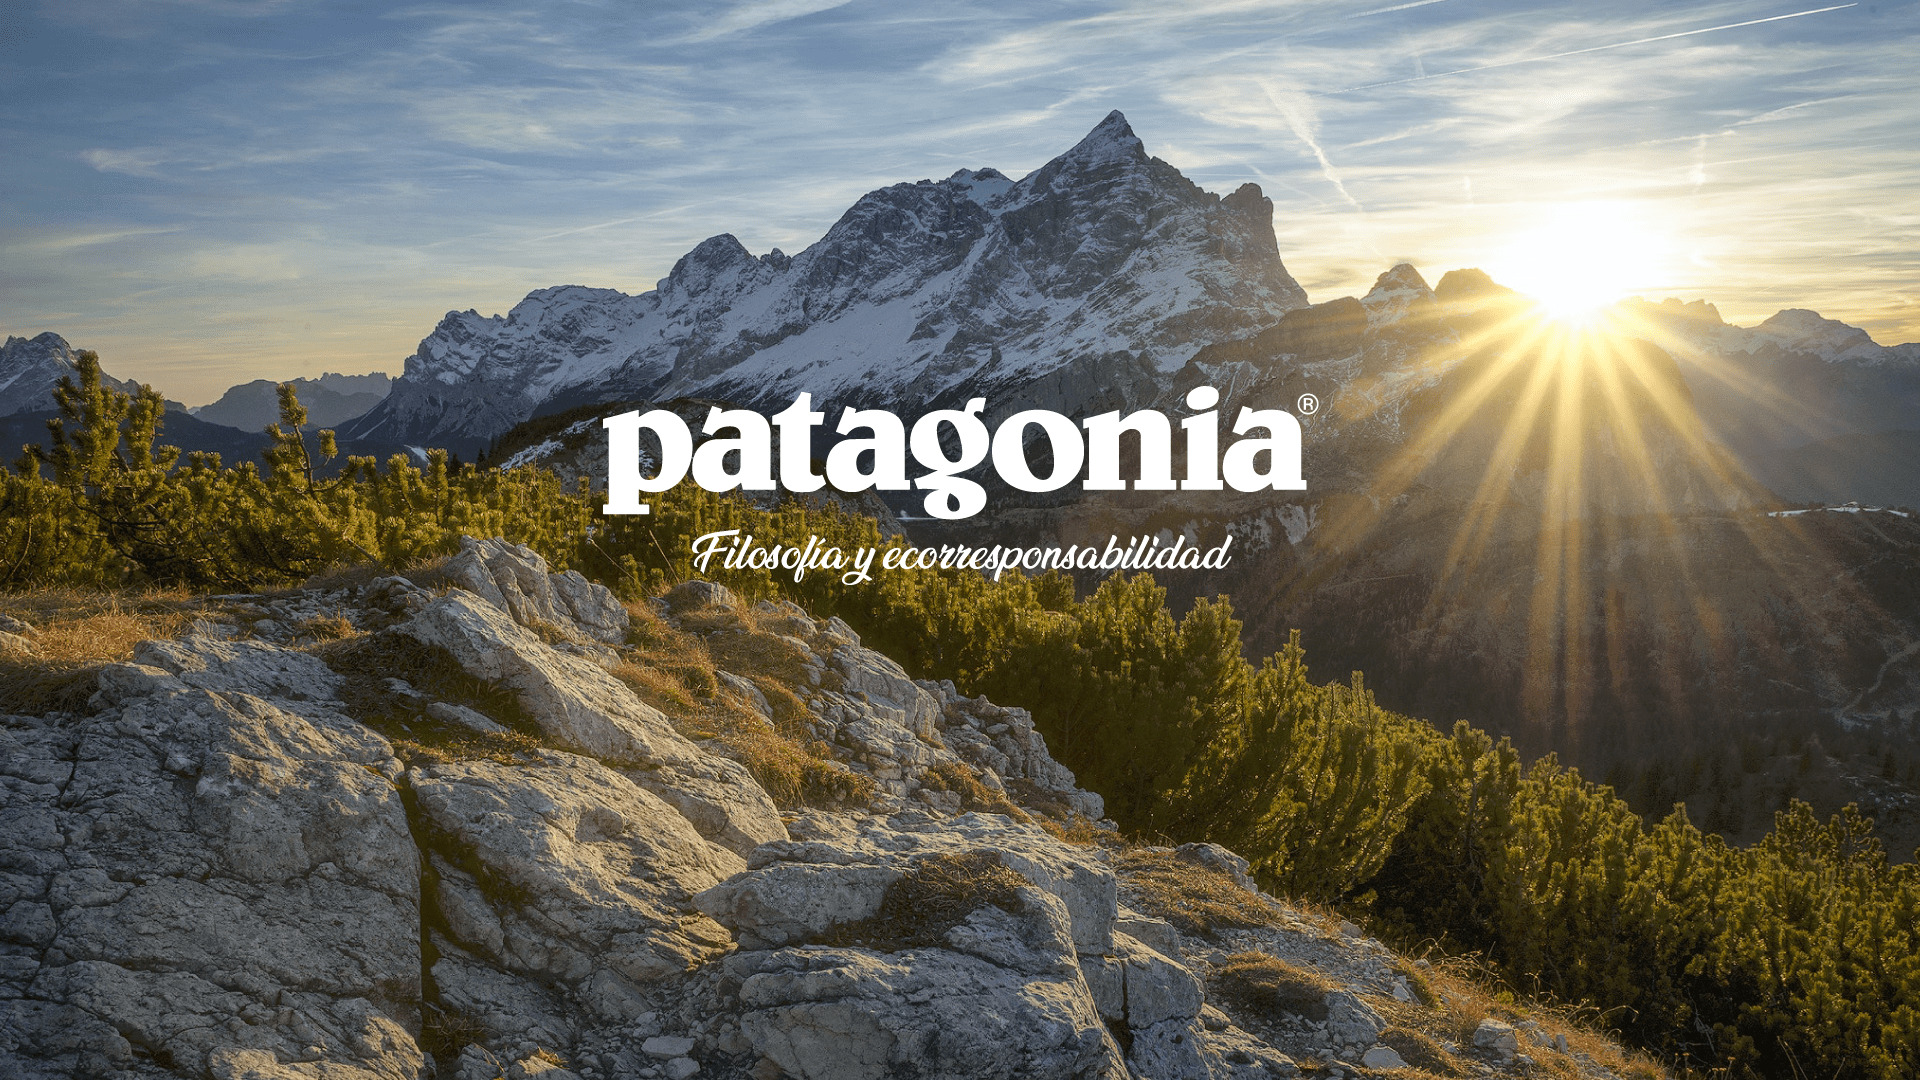 Patagonia: marca de outdoor con filosofía ecorresponsabilidad